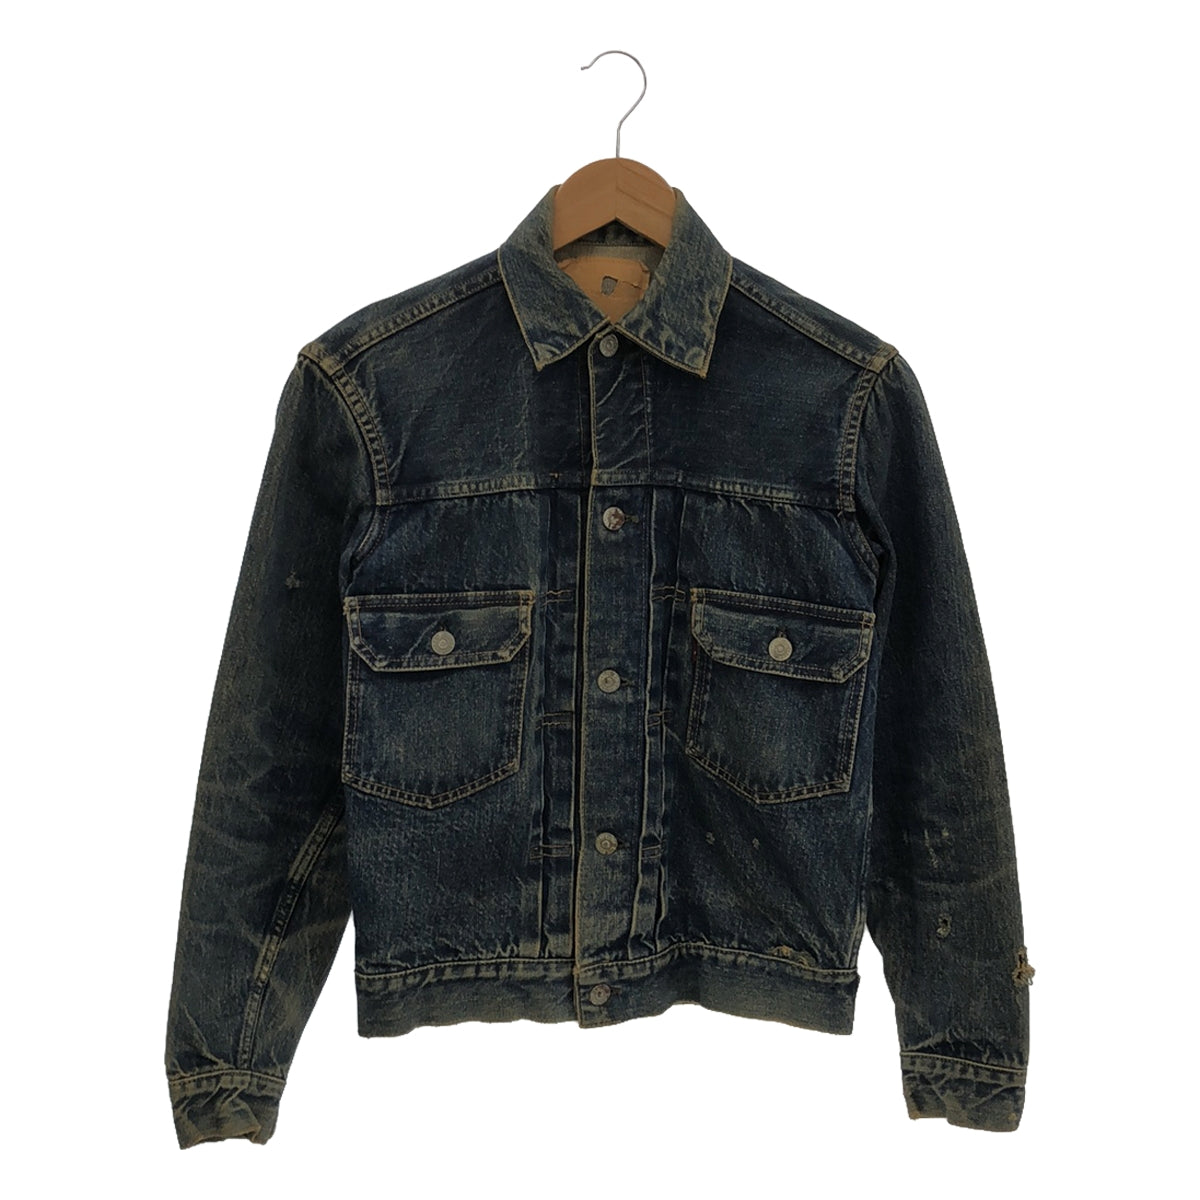 Vintage Denim Jacket 2nd 50s-60s状態…b